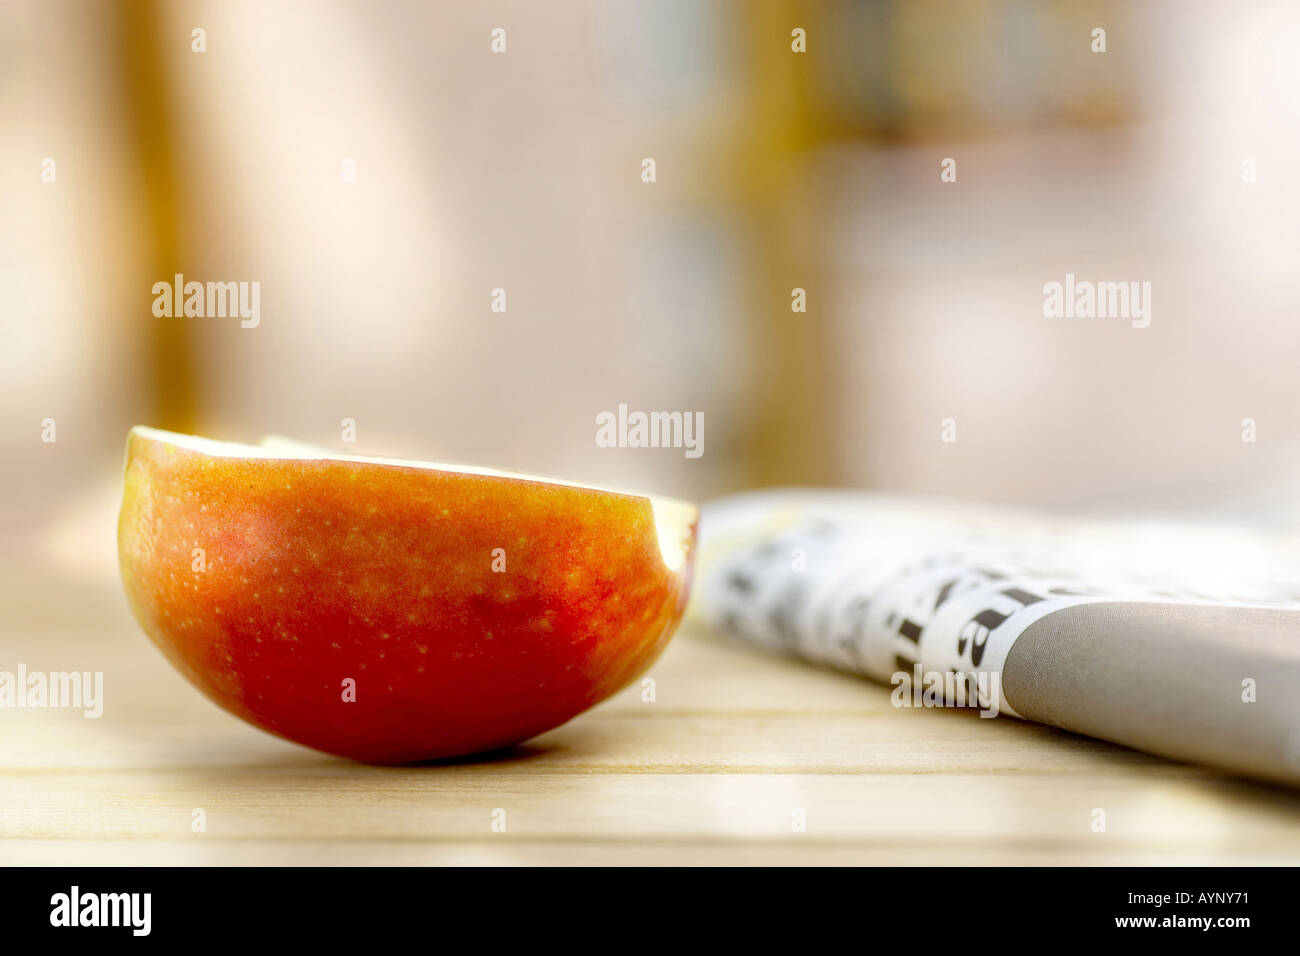 Halbierter Apfel als Zwischenmahlzeit Stock Photo